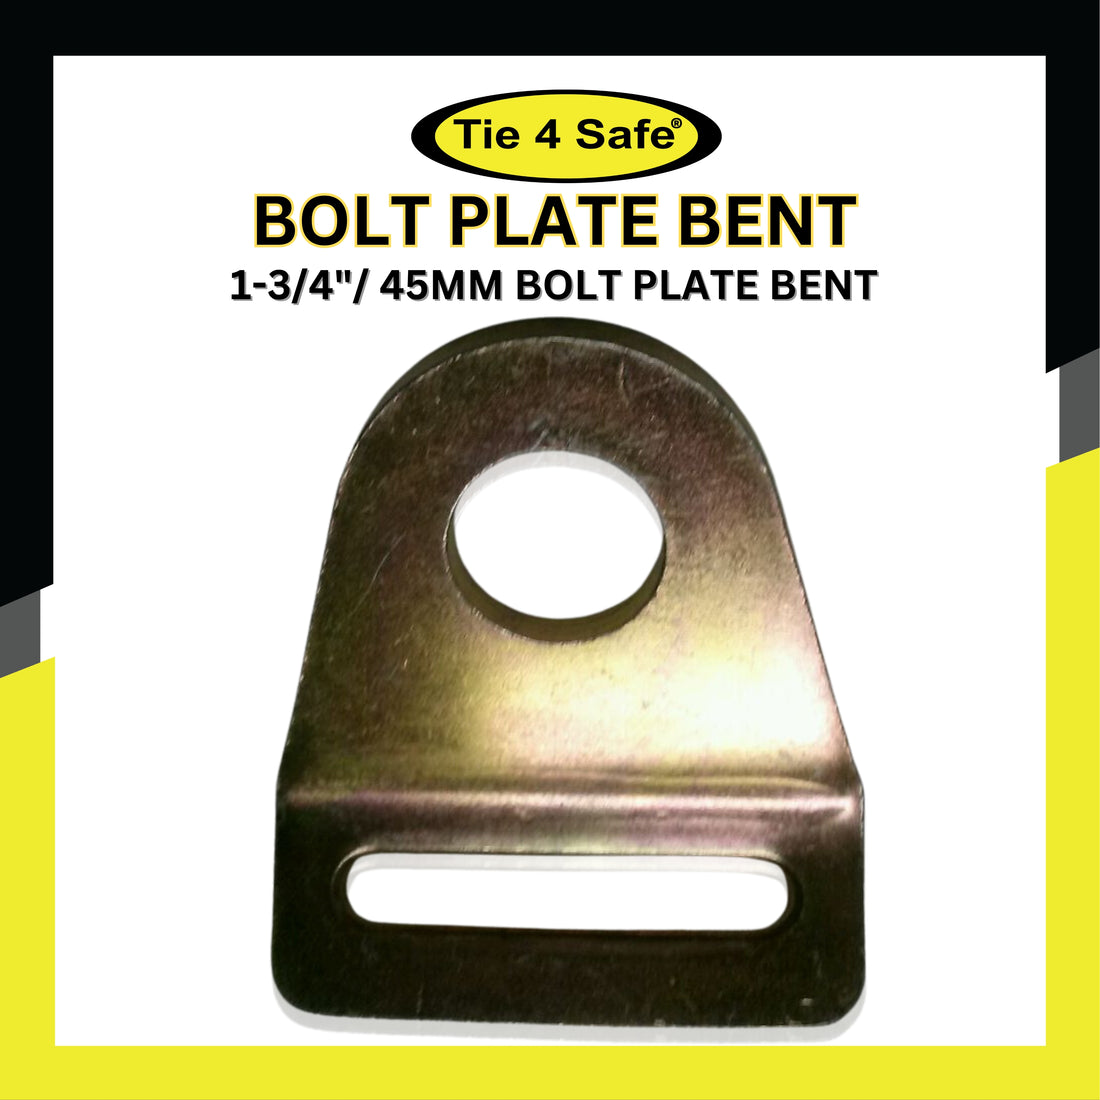 1-3/4"/ 45mm Bolt Plate Bent